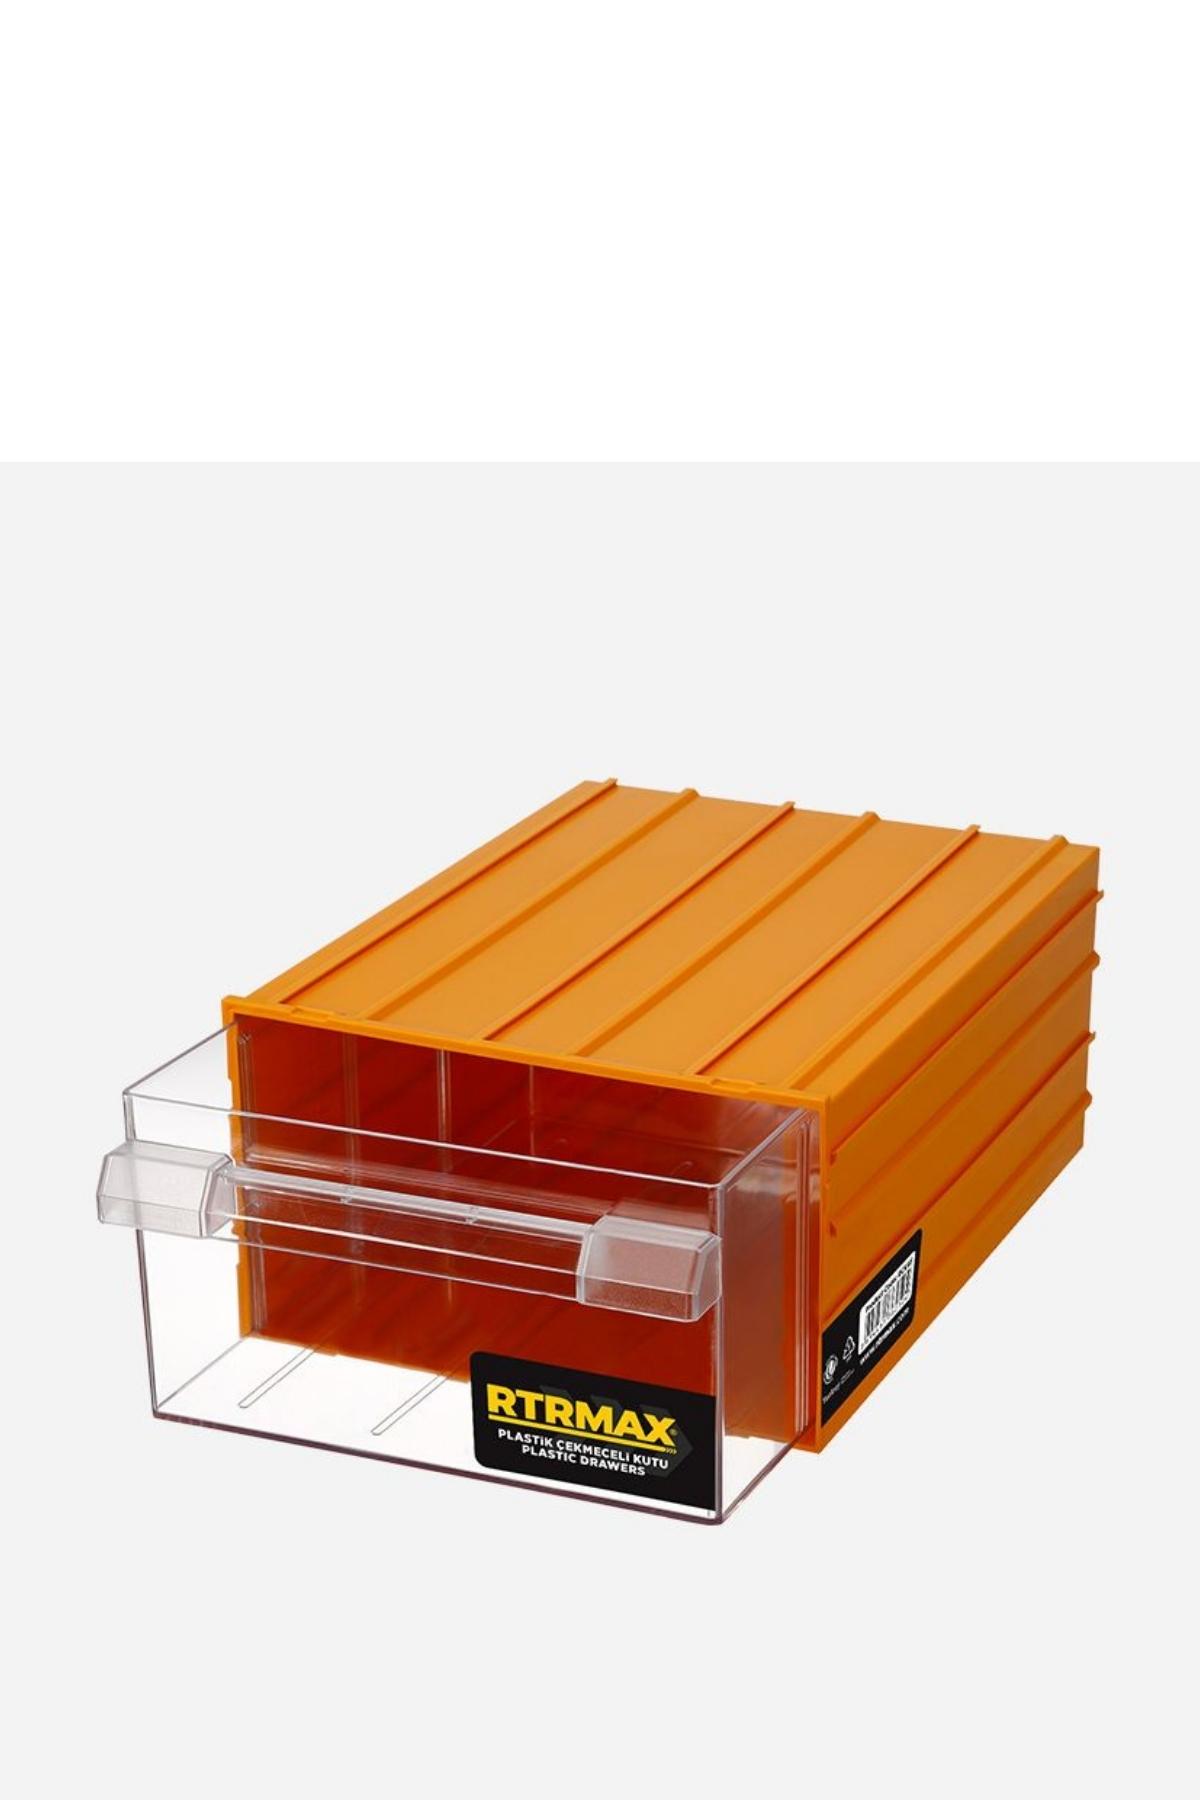 RTRMAX RCK50 Plastik Çekmeceli Kutu
